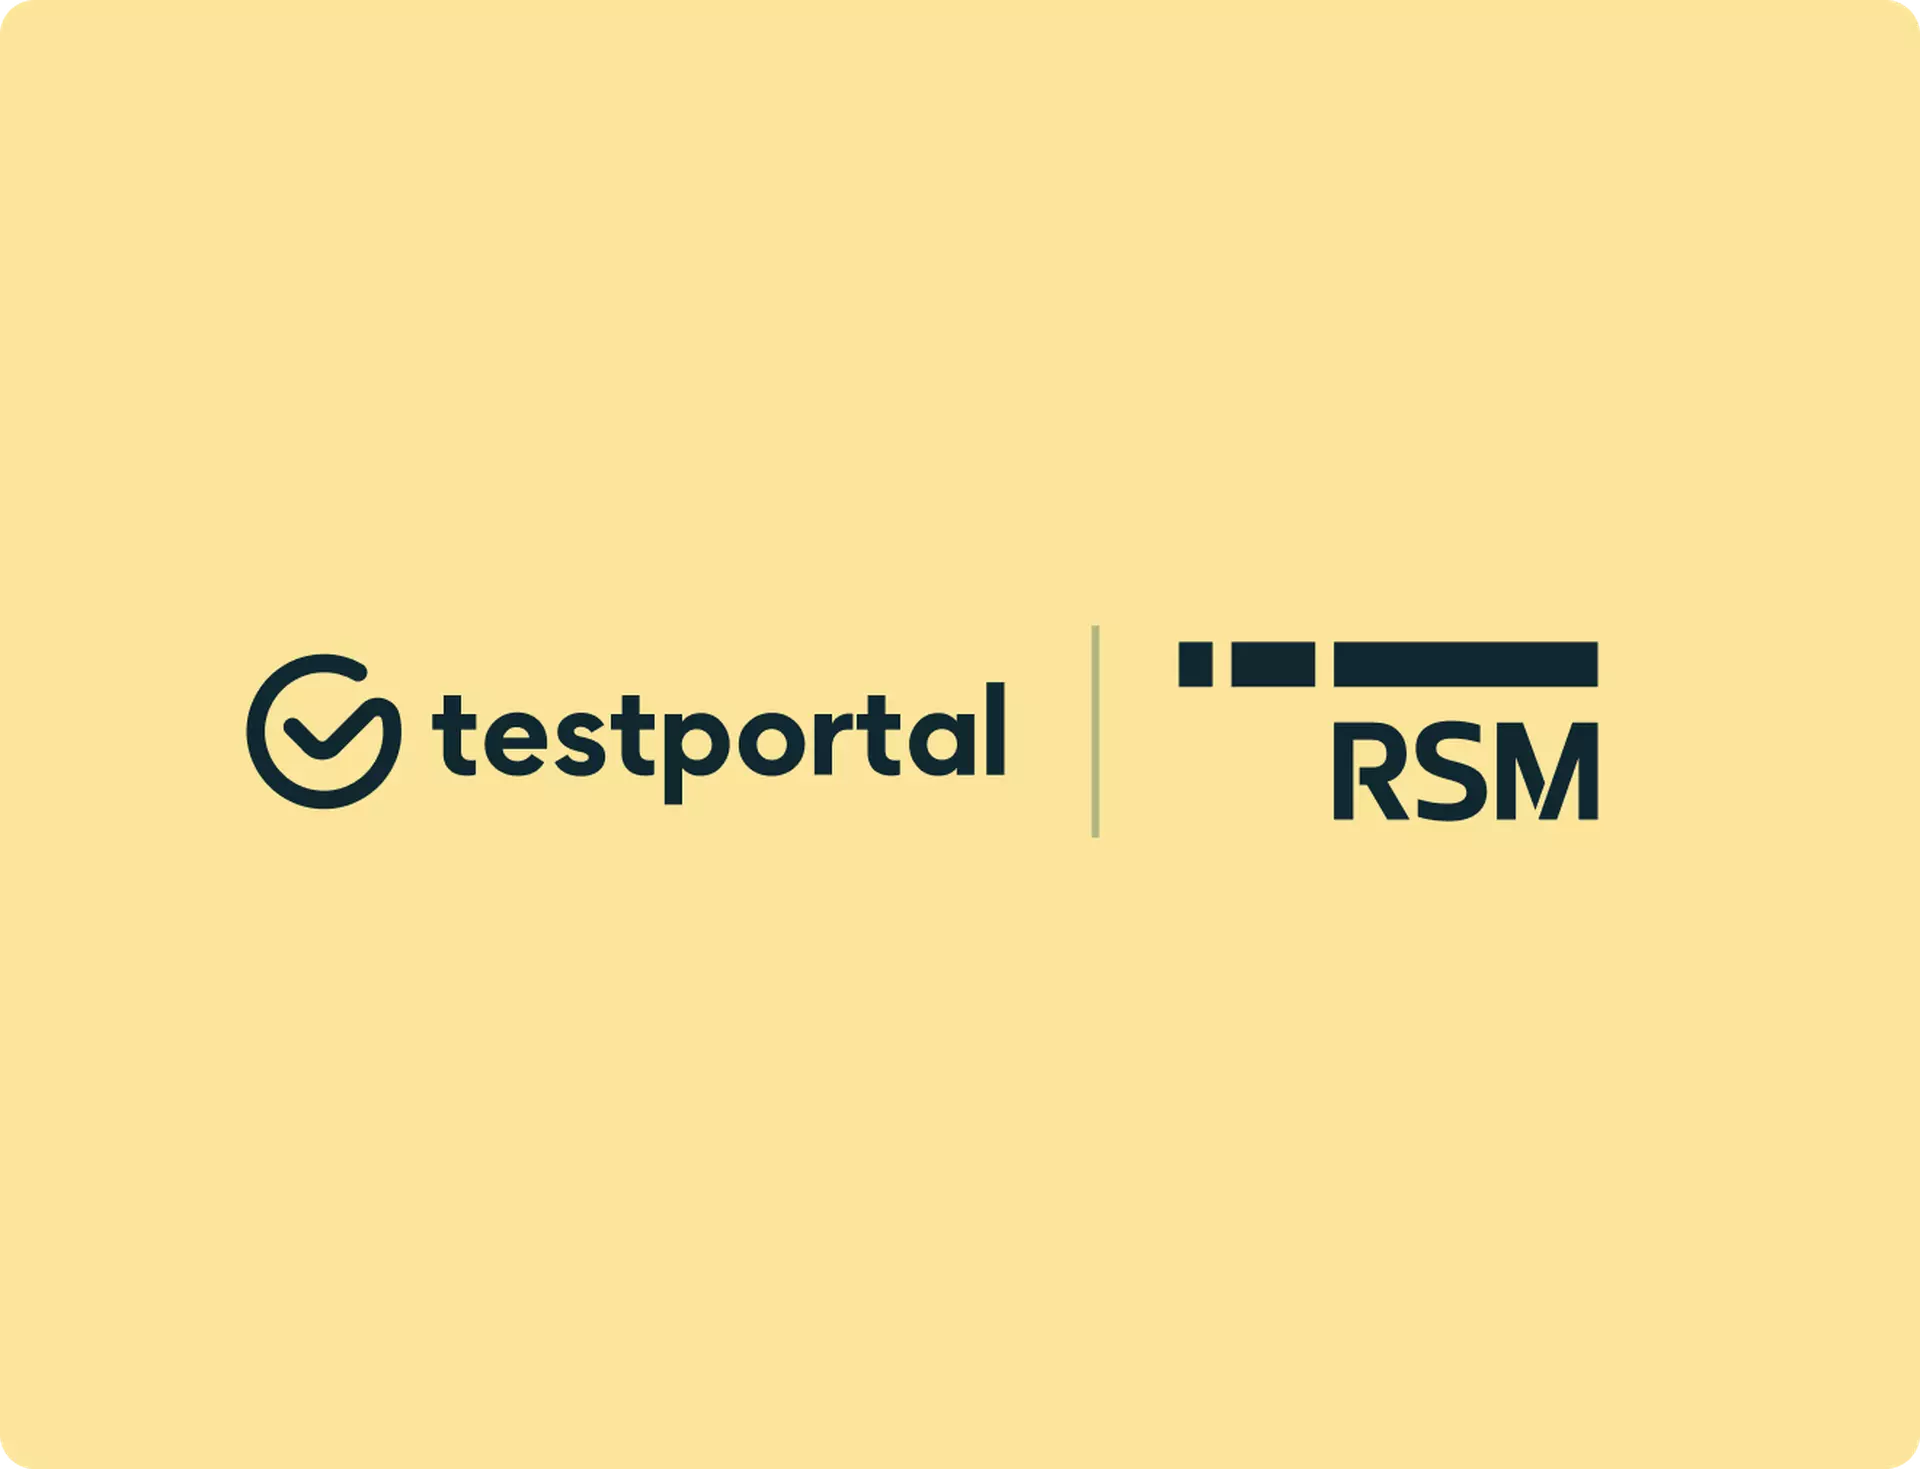 RSM Poland and Testportal logos